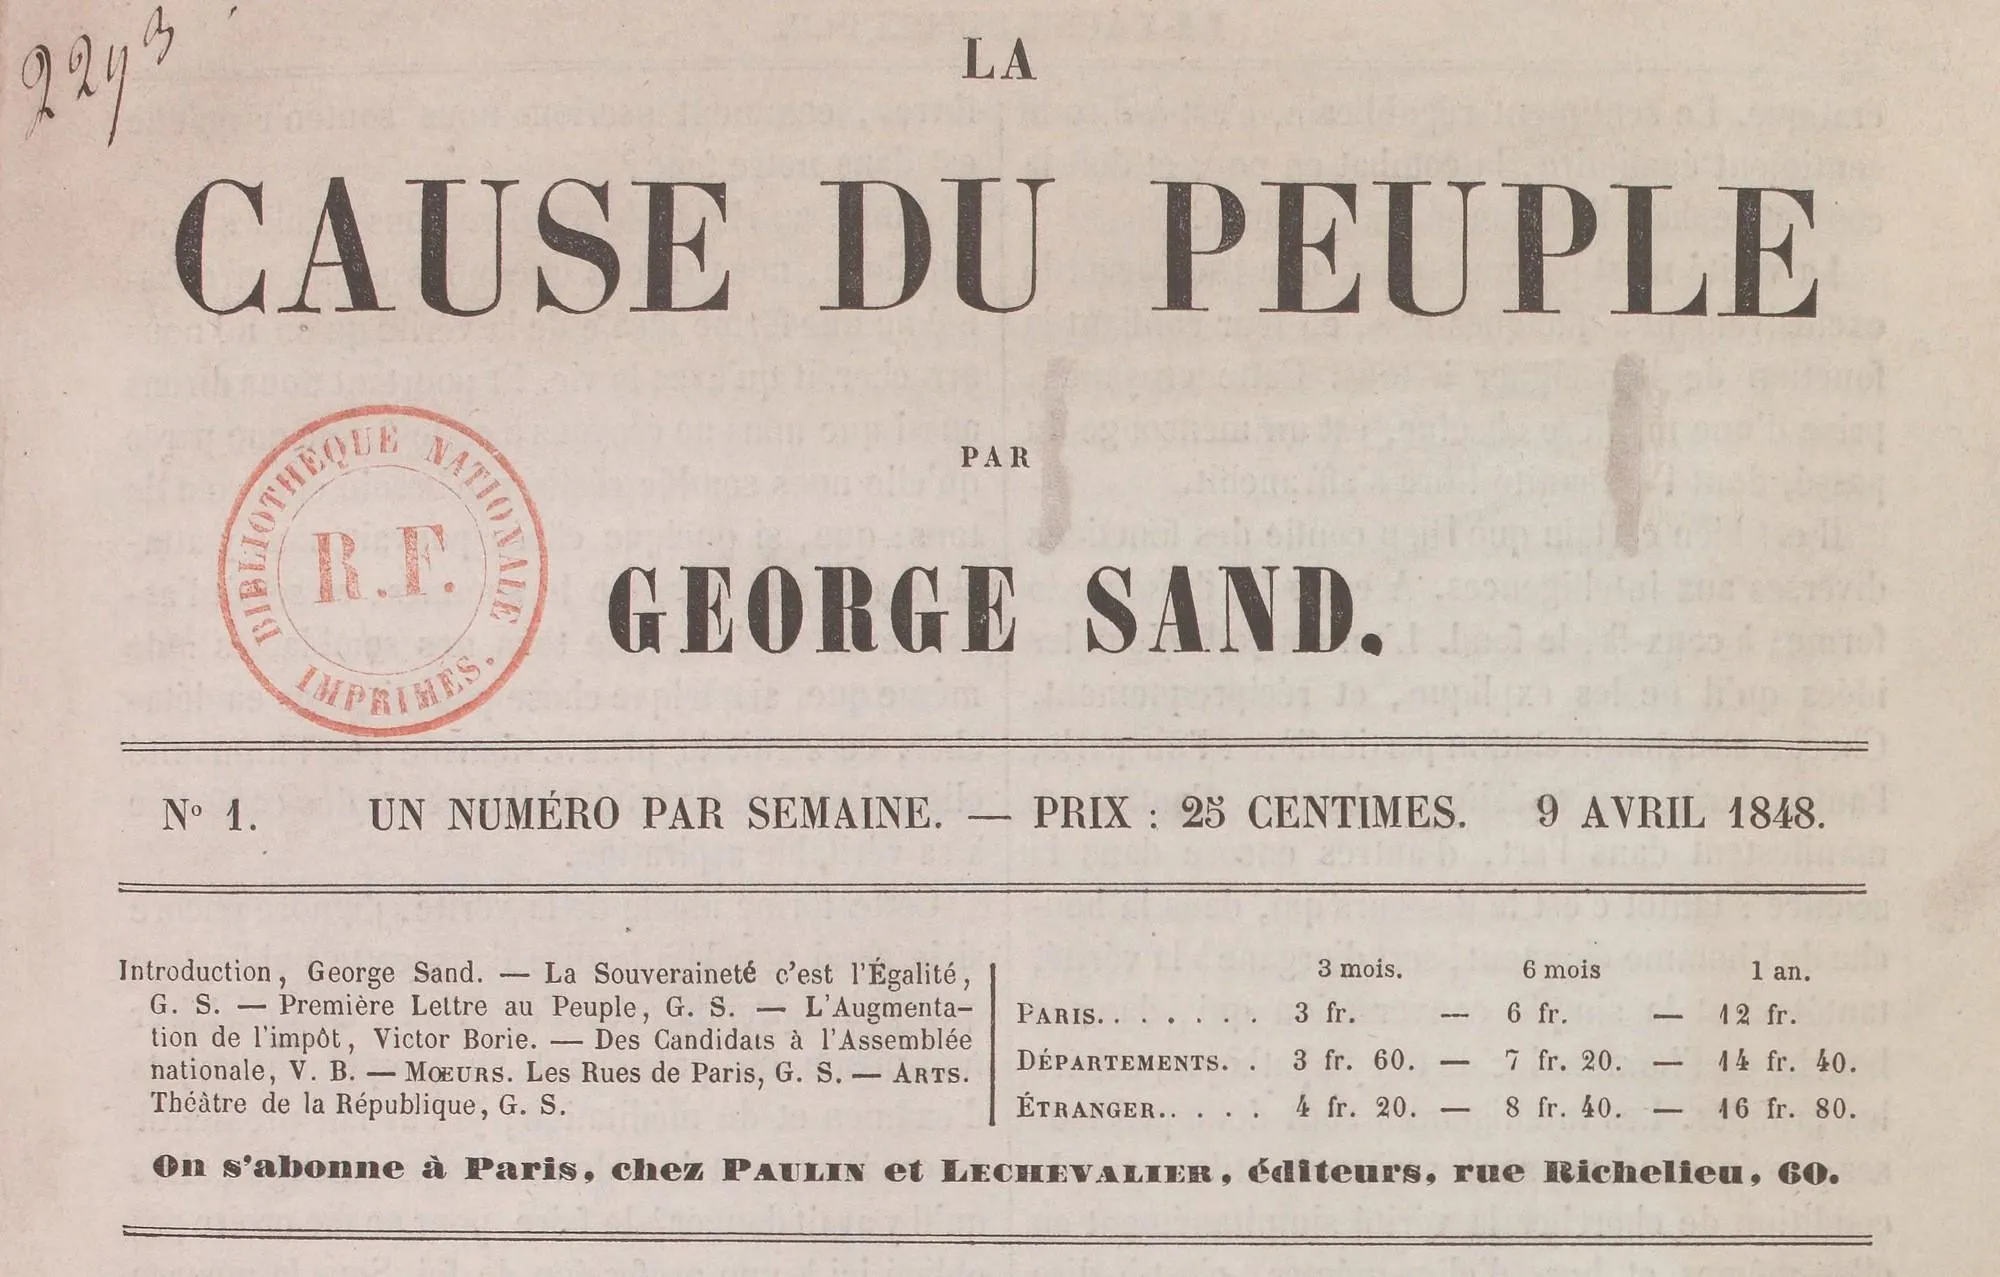 Journal La Cause du peuple, dirigé par George Sand